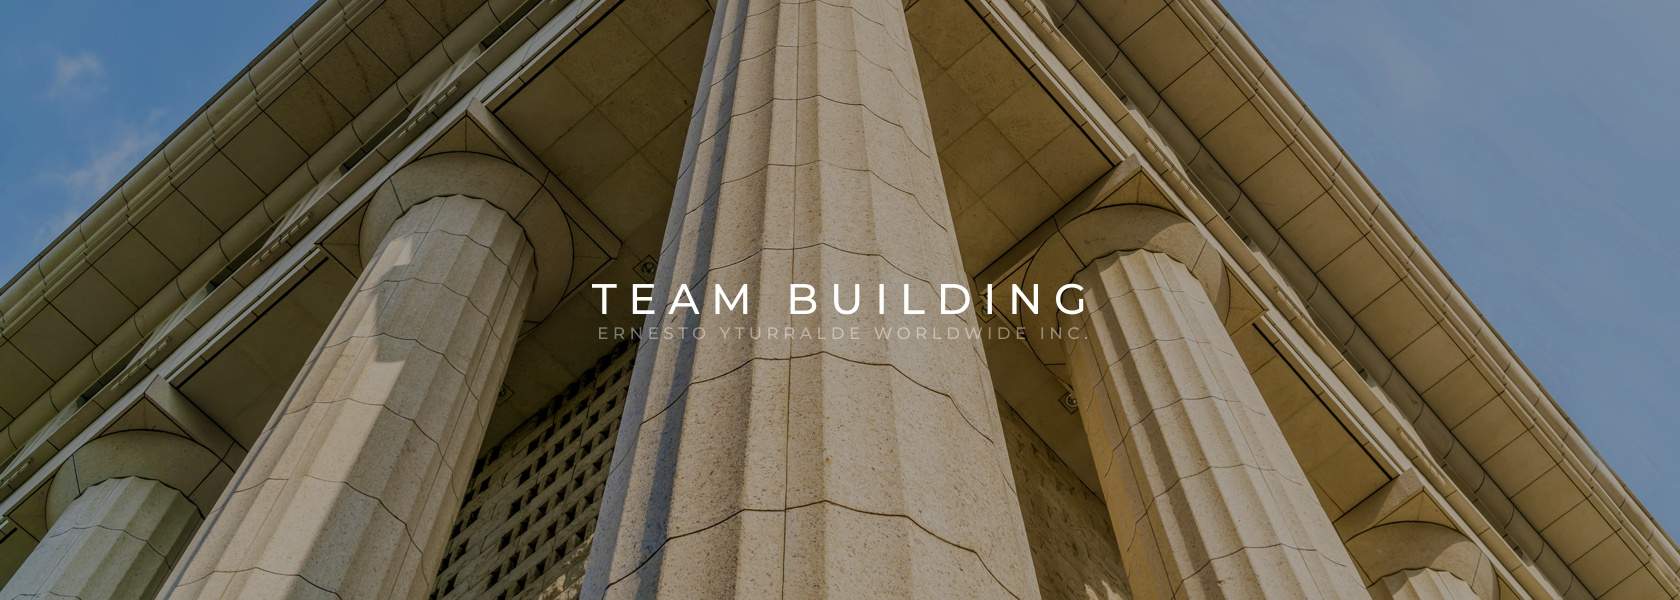 Quito Team Building Corporativo Vivencial Online para el desarrollo de equipos de trabajo